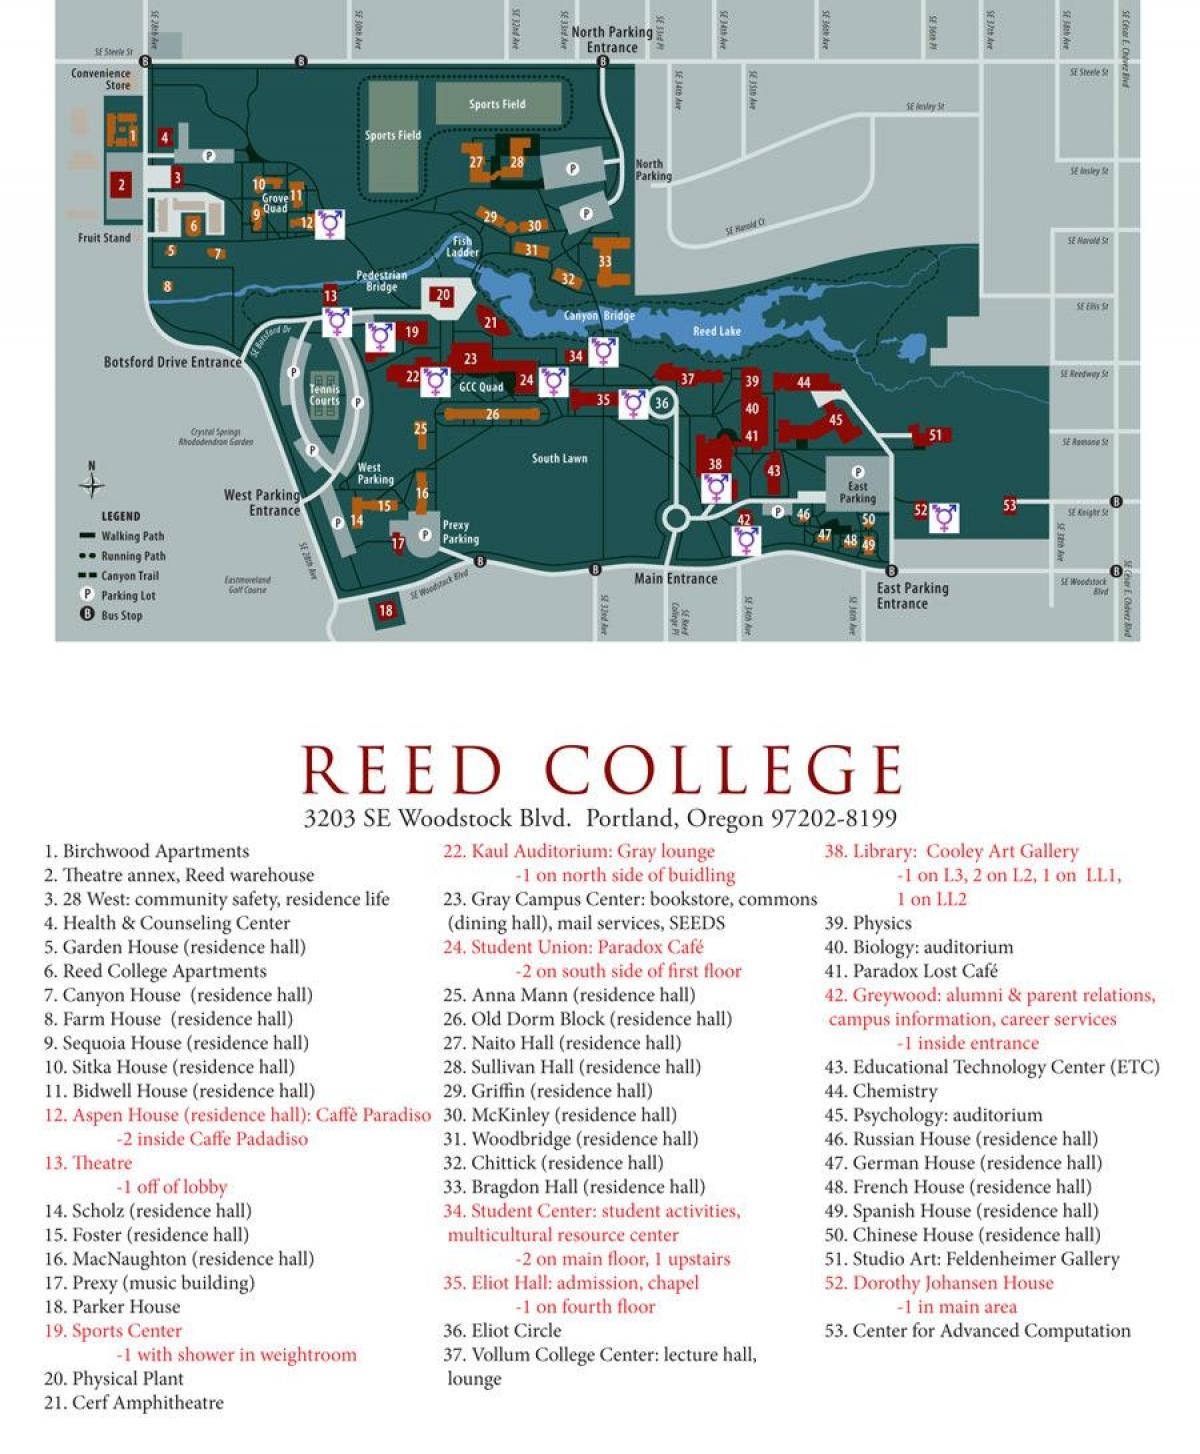 نقشه از کالج رید